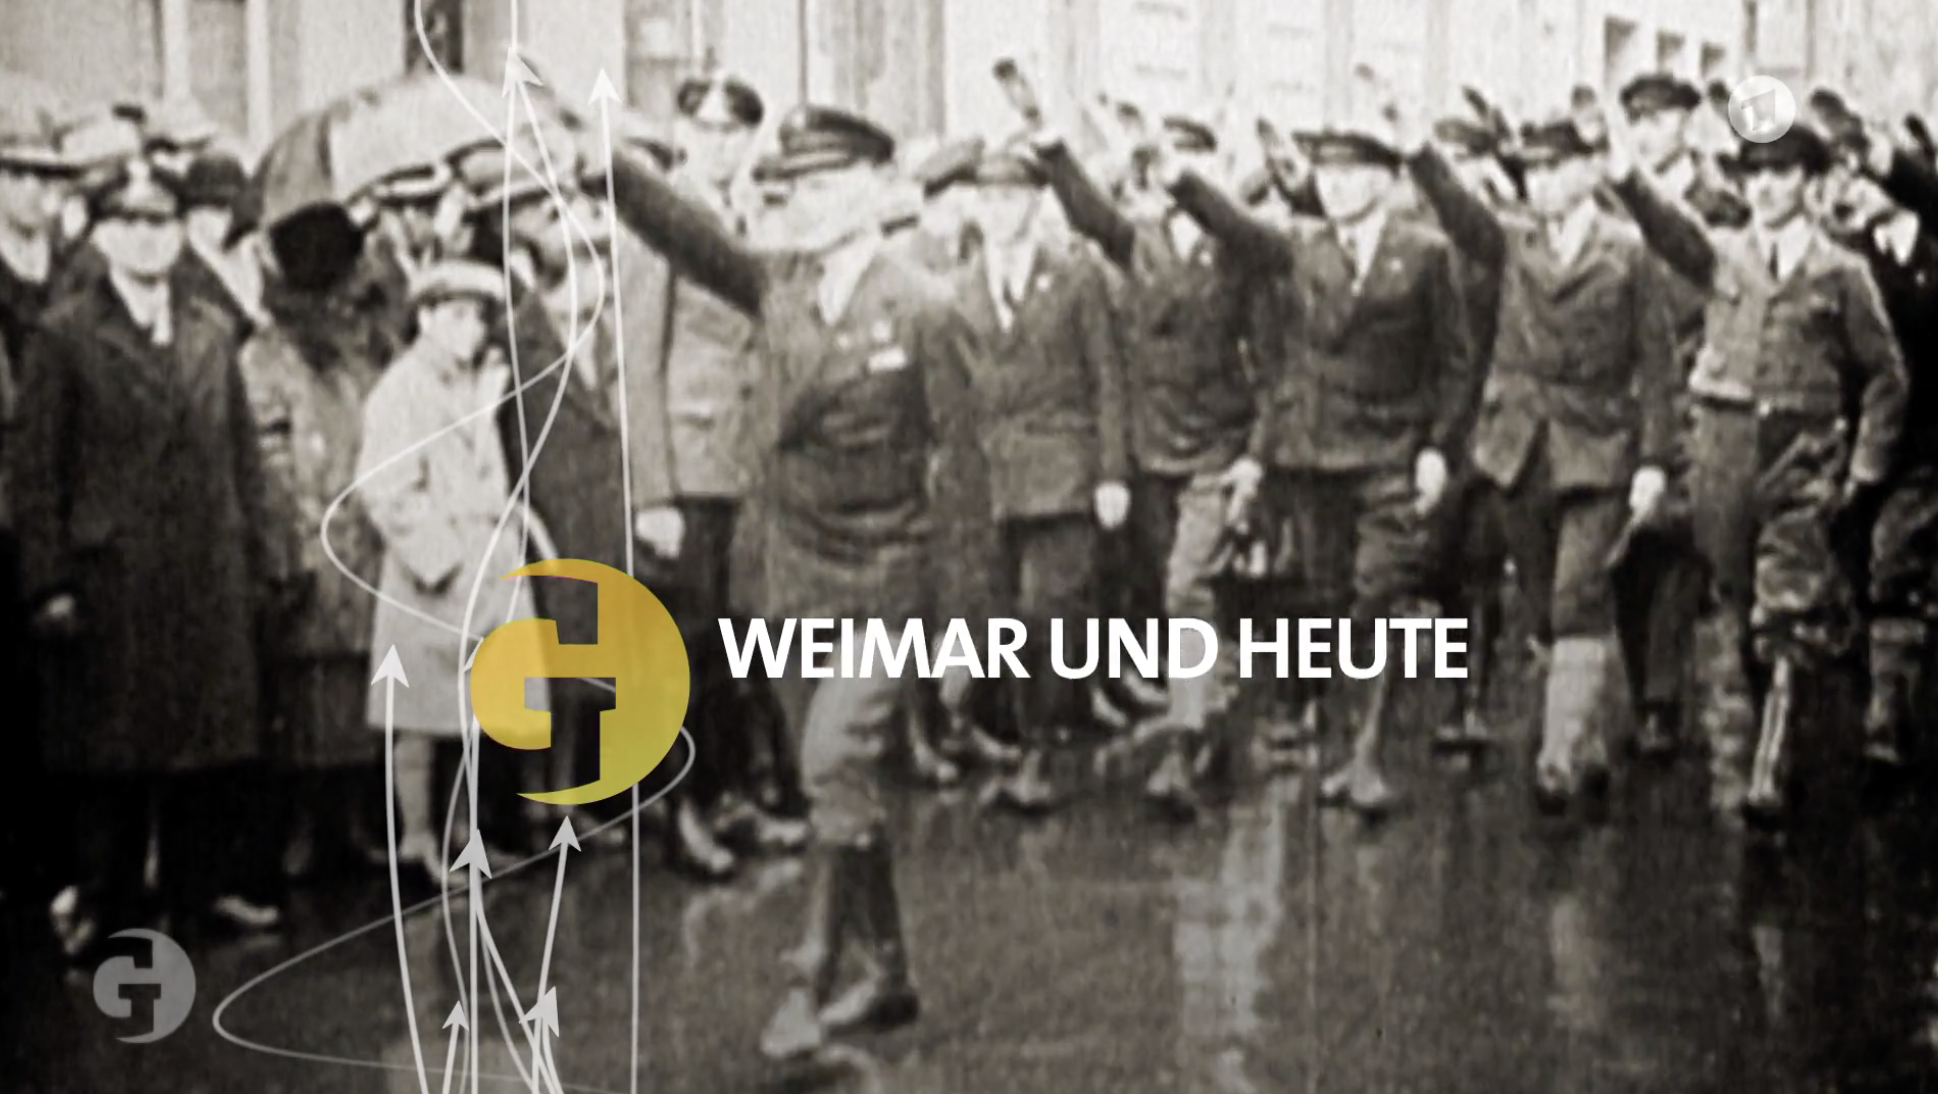 Doku ARD: "Weimar und heute"